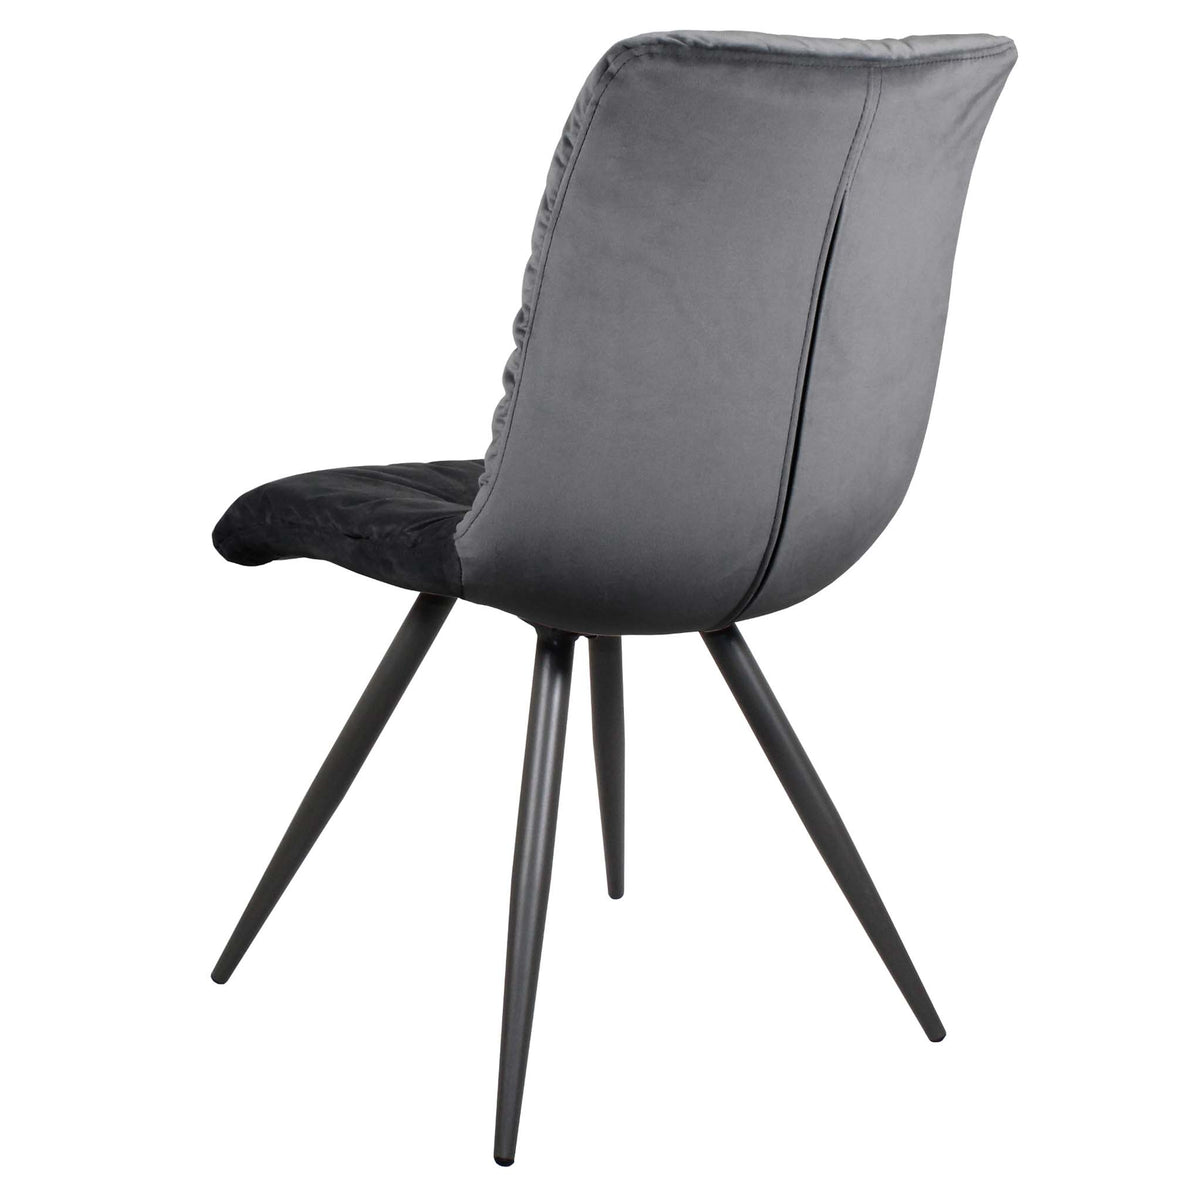 Back of the Dark Grey Addison Velvet Chair from Roseland Furniture